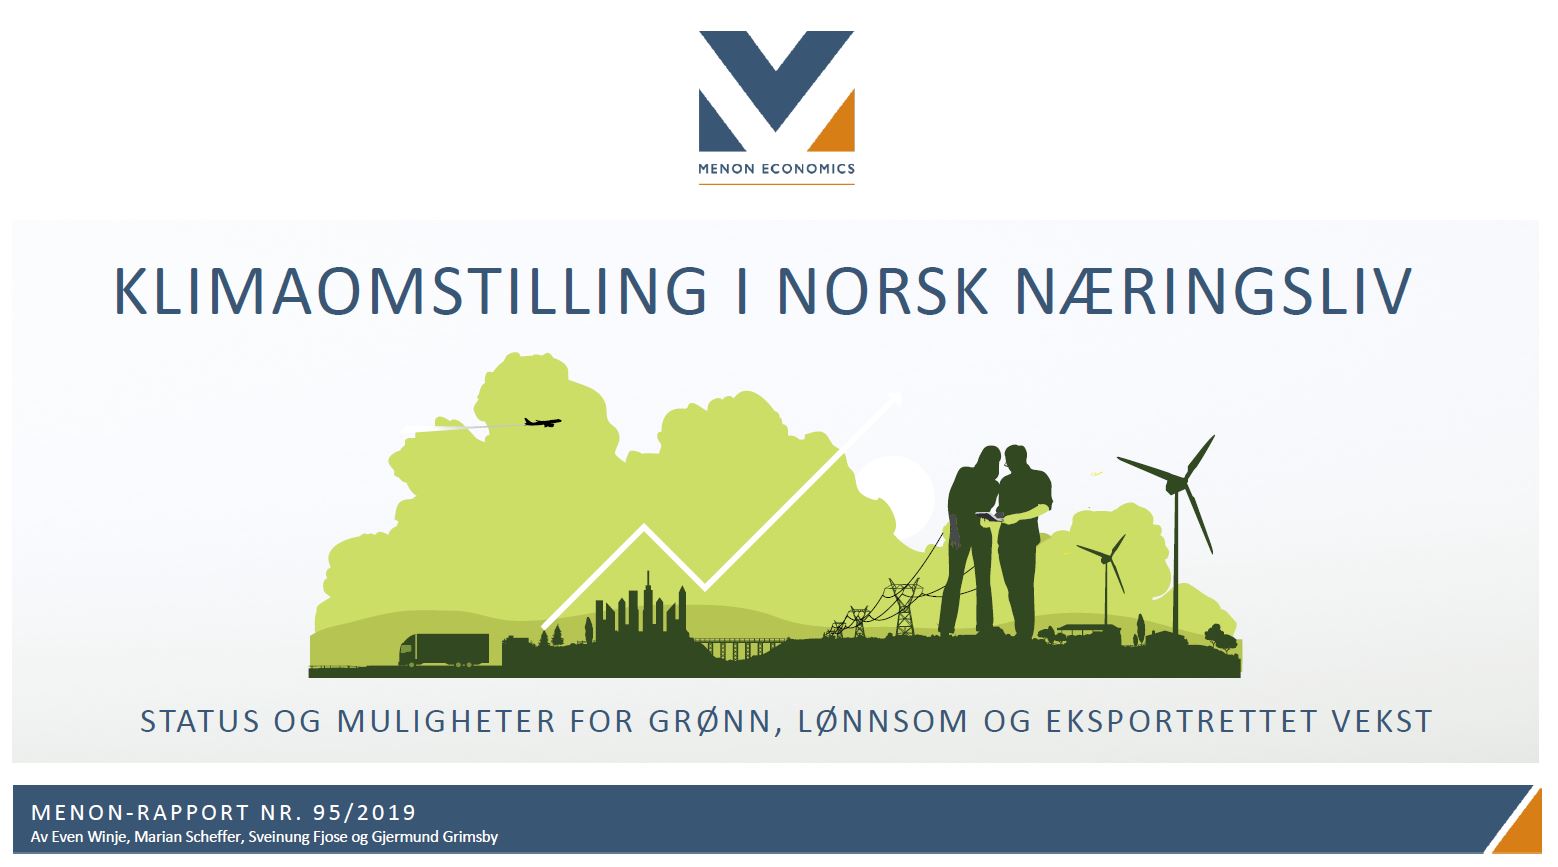 Klimaomstilling i norsk næringsliv